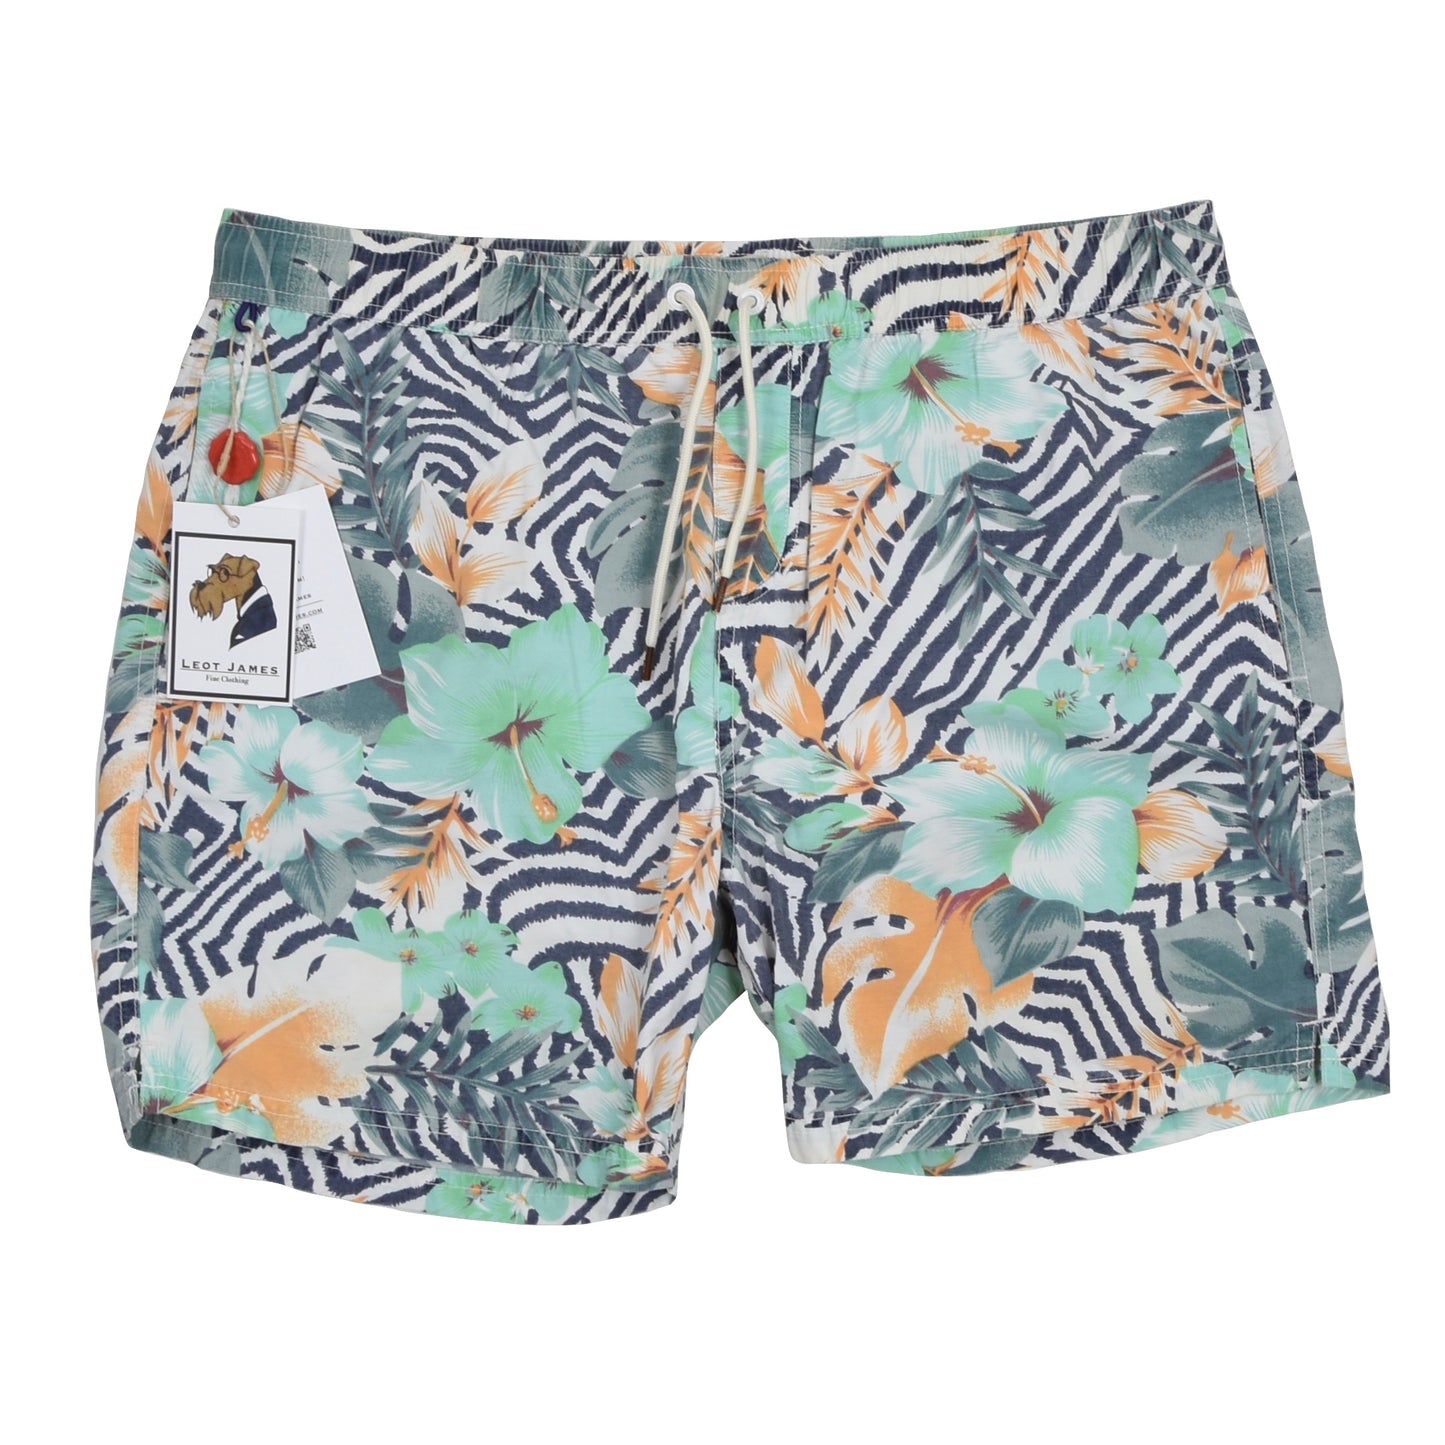 NEW Scotch & Soda Swim Shorts/Trunks Size M - Floral